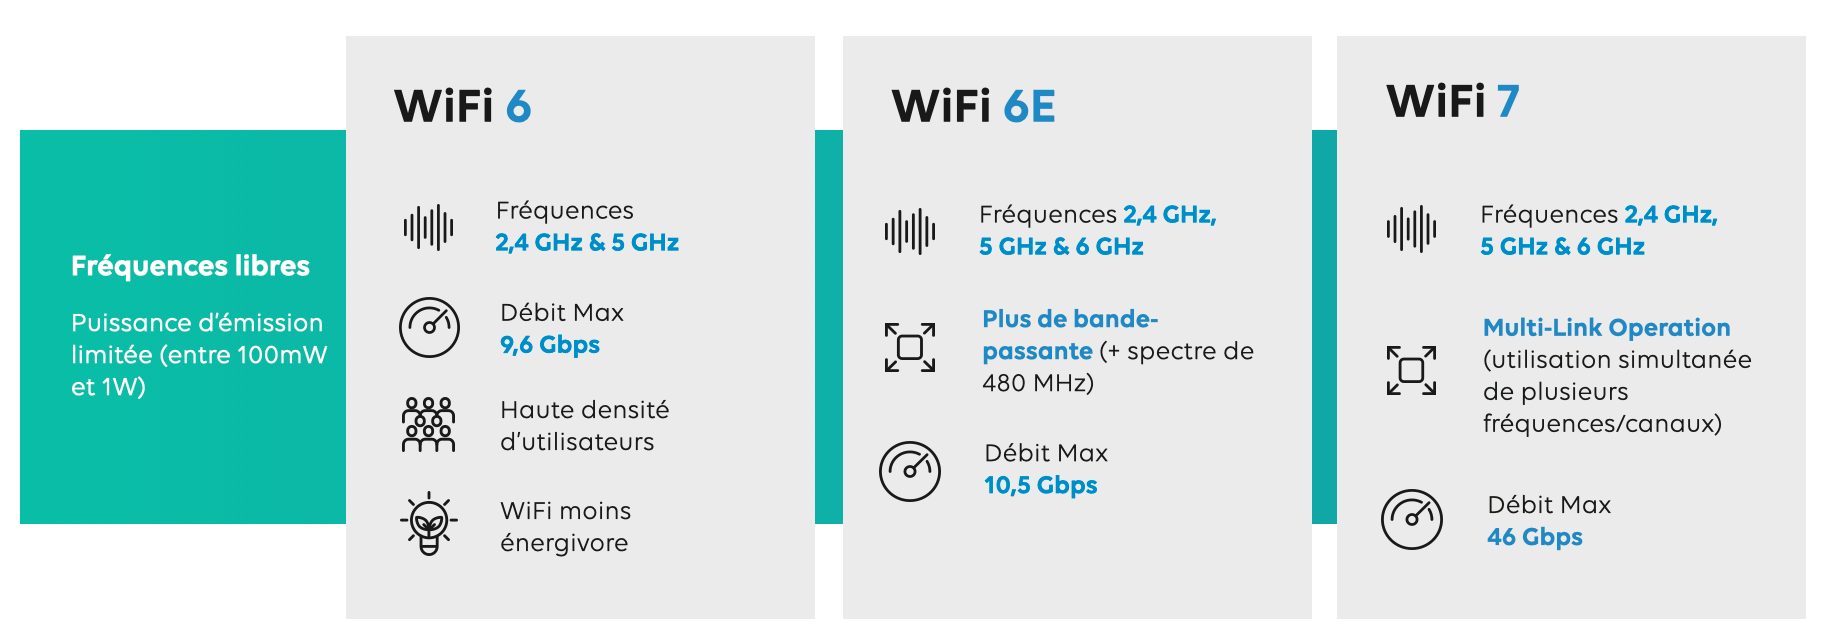 WiFi 5 vs WiFi 6 : quelle est la différence ?